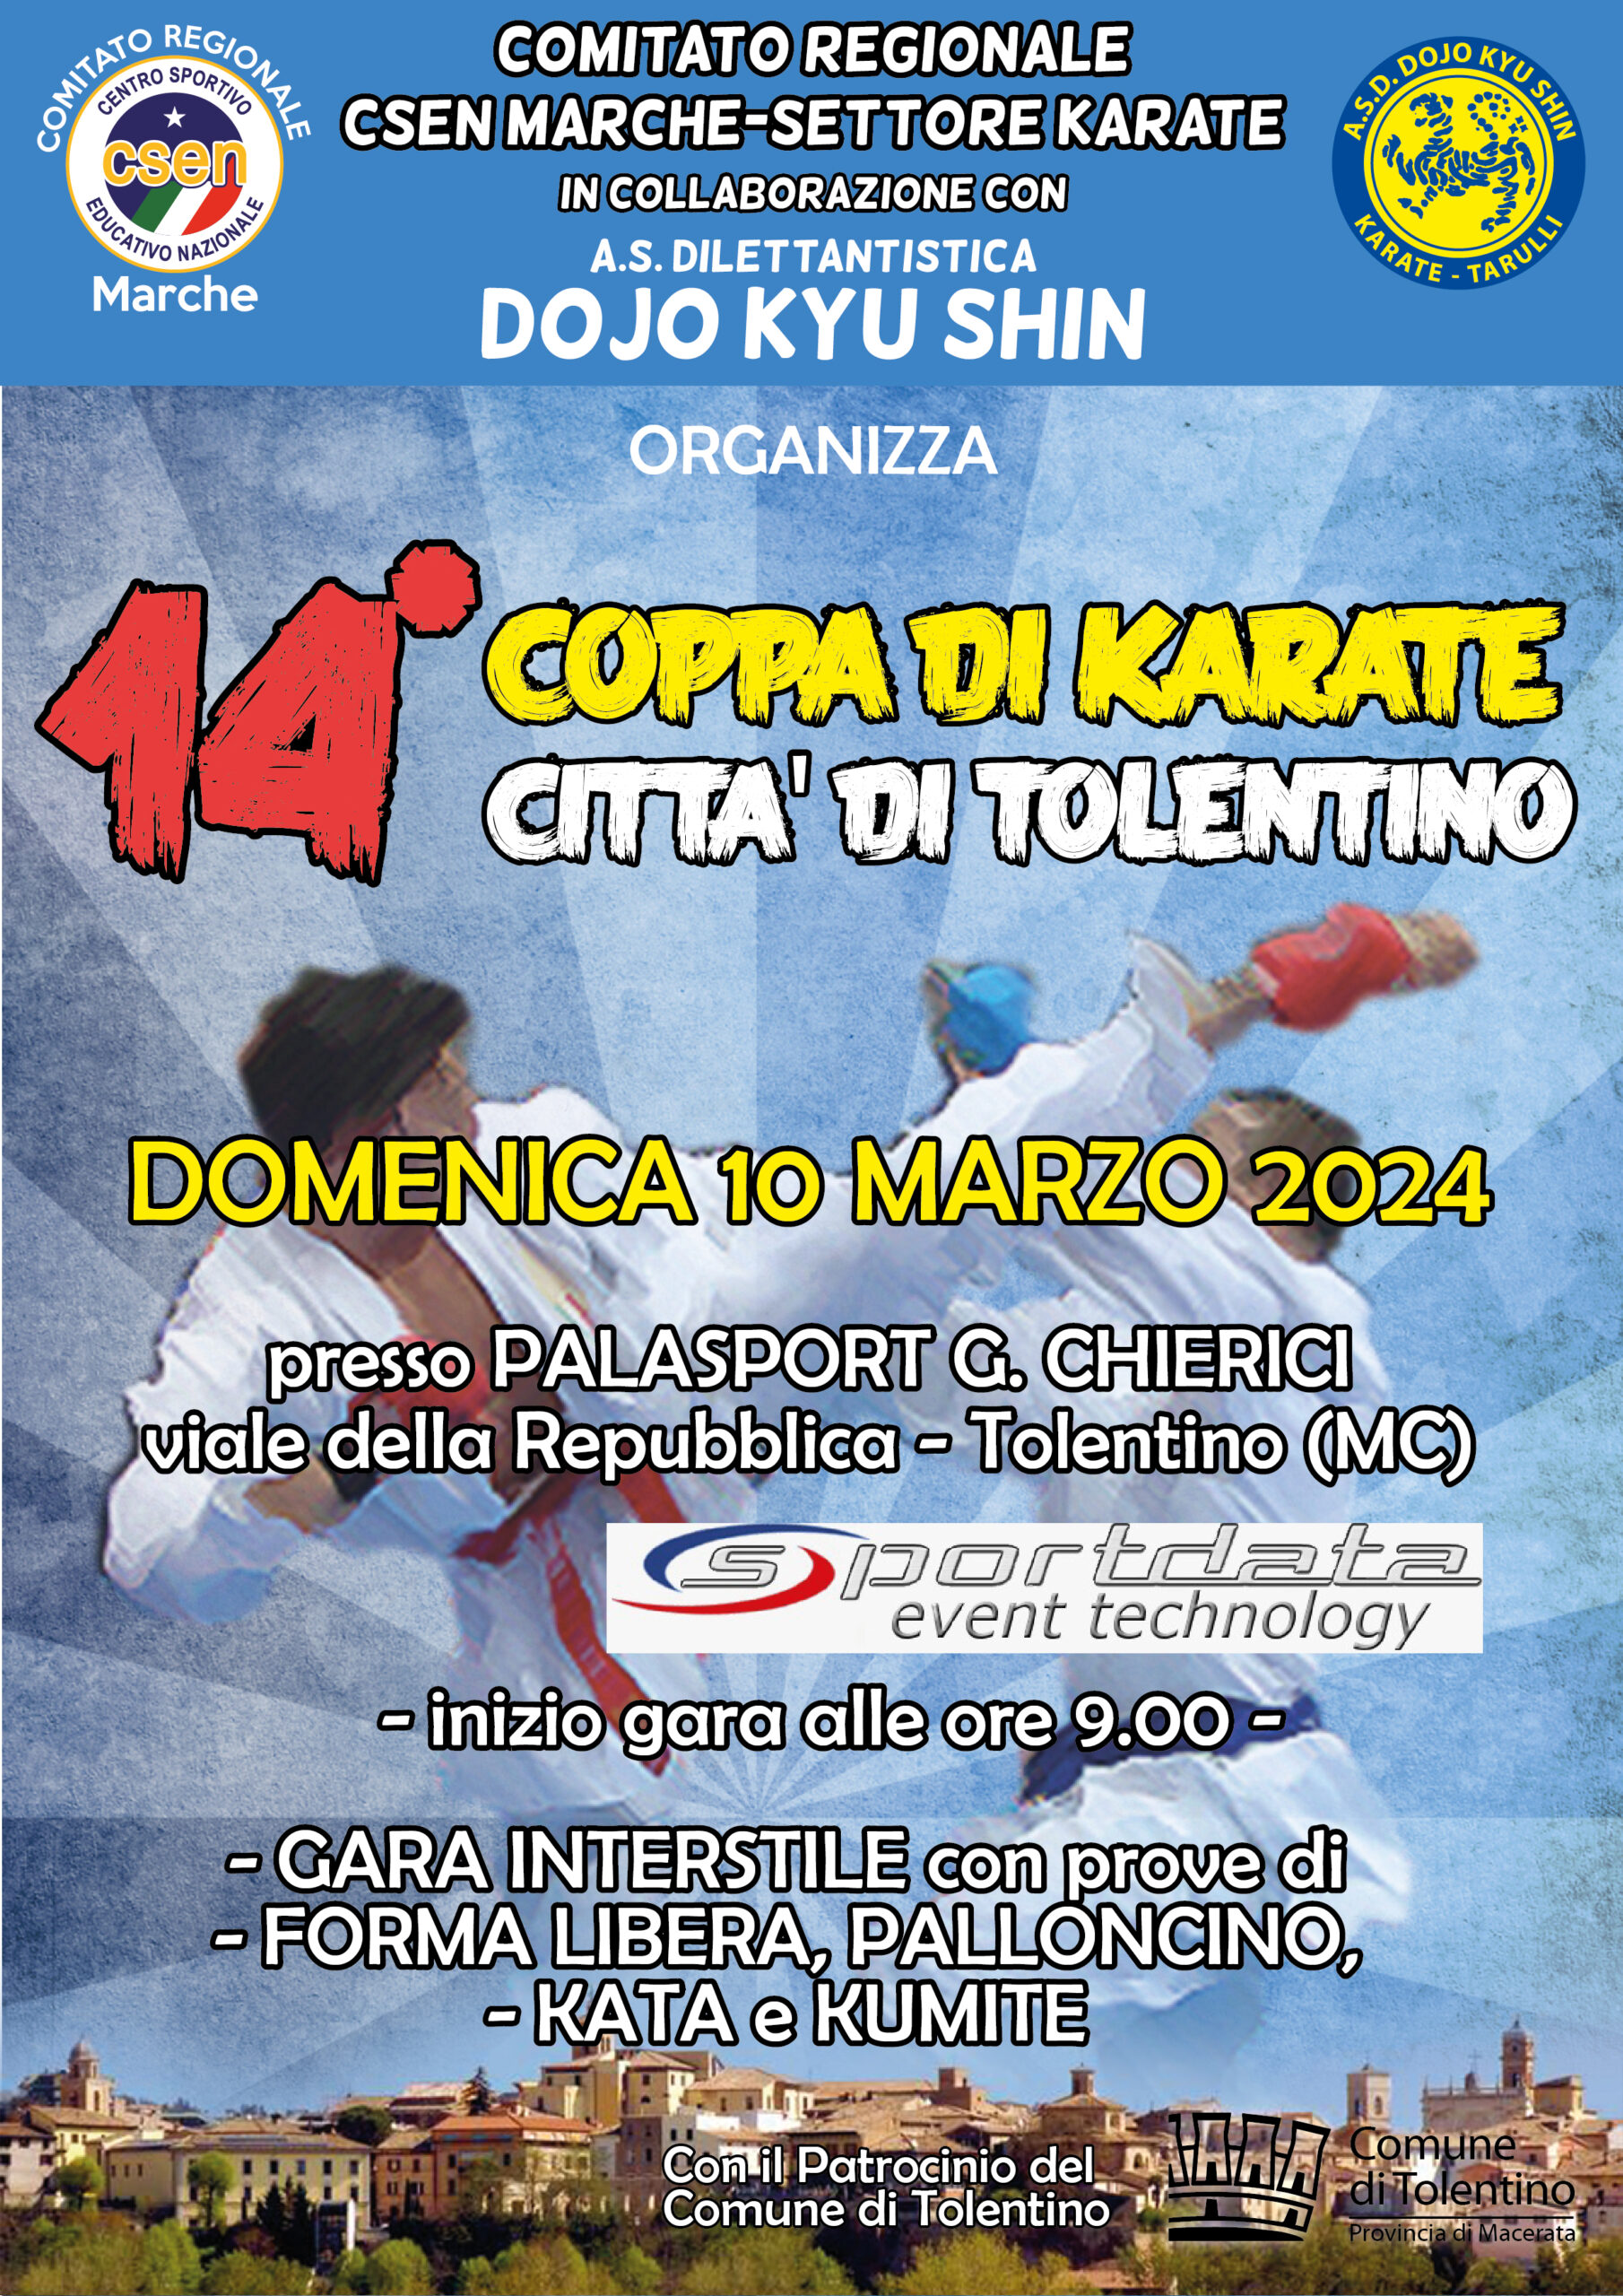 CRMarche Csen Karate: 14^Coppa di Karate Città di Tolentino – 10/03/2024.